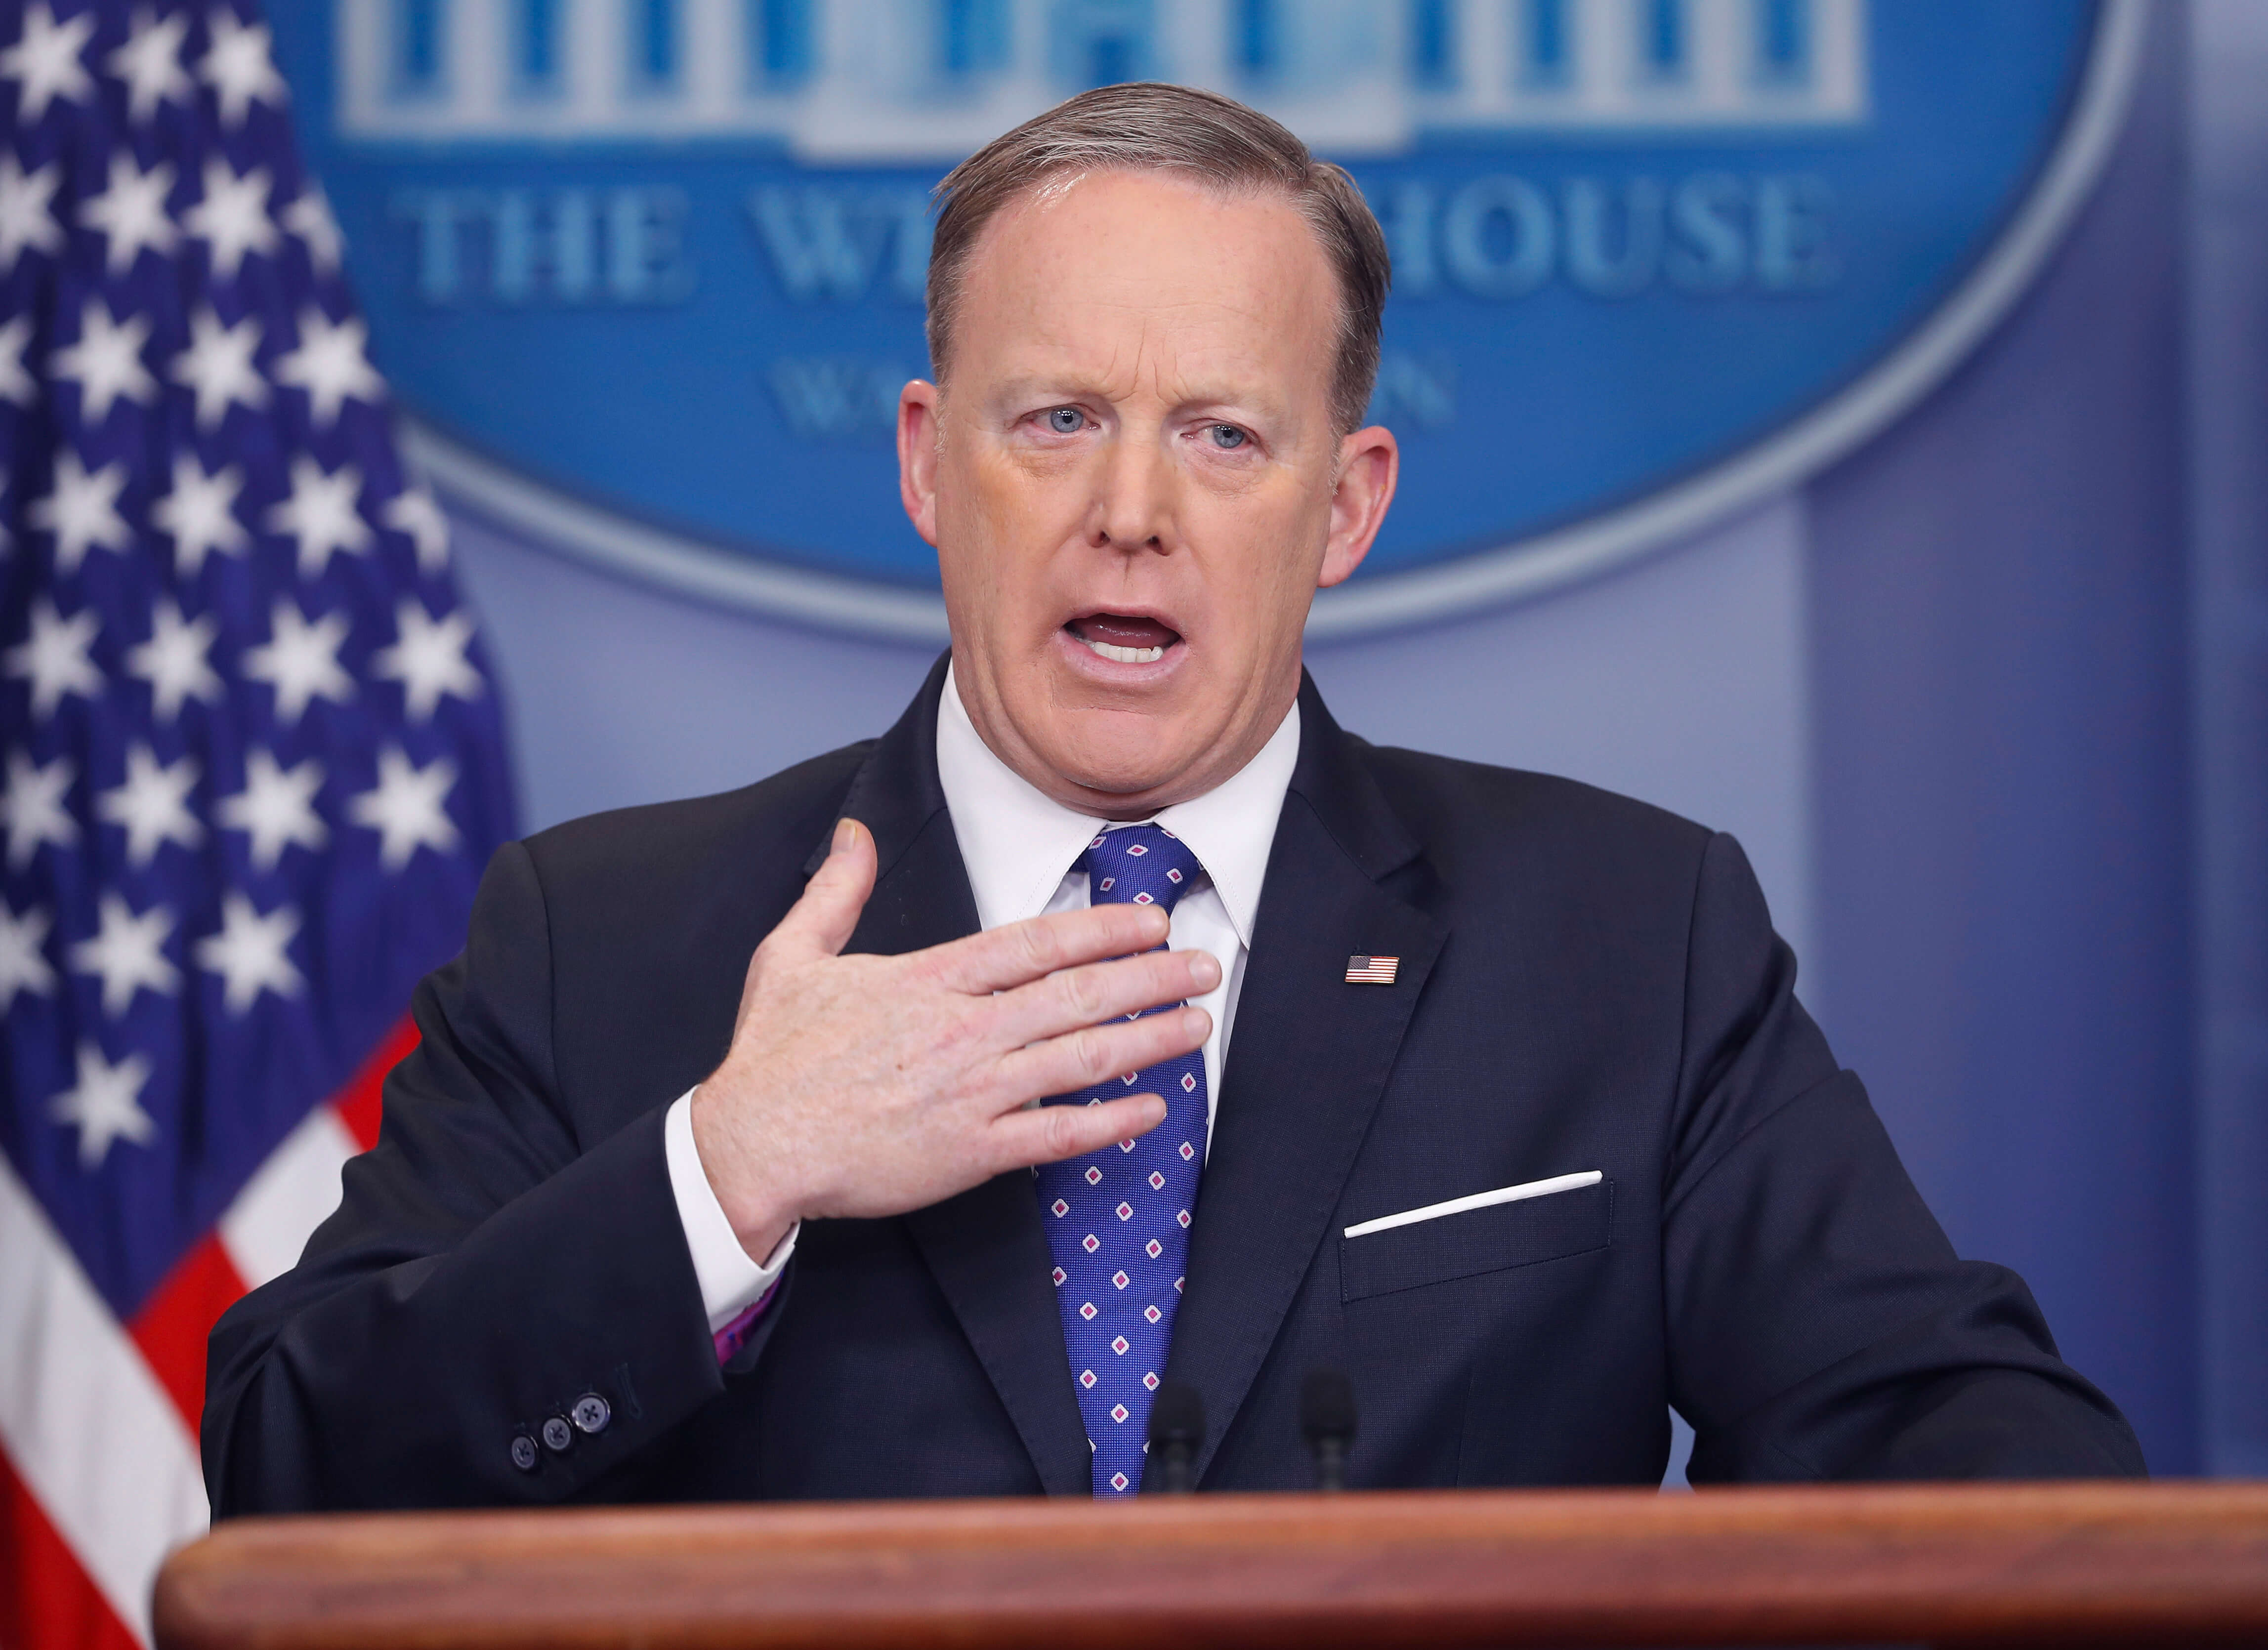 El portavoz de la Casa Blanca, Sean Spicer, habla ante los medios de comunicación durante la sesión informativa diaria en la sala de prensa de la Casa Blanca en Washington. (AP)